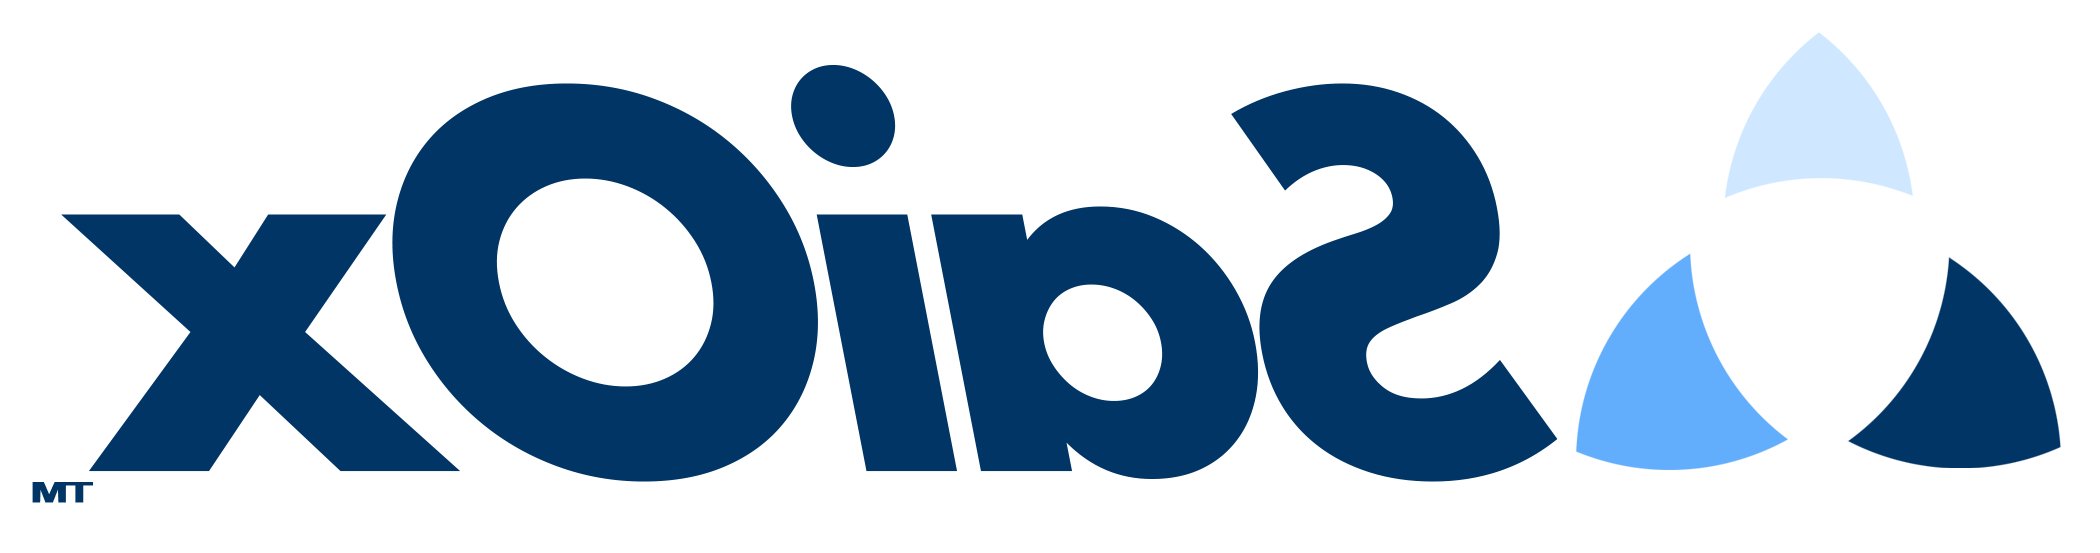 SaiOx Inc. logo